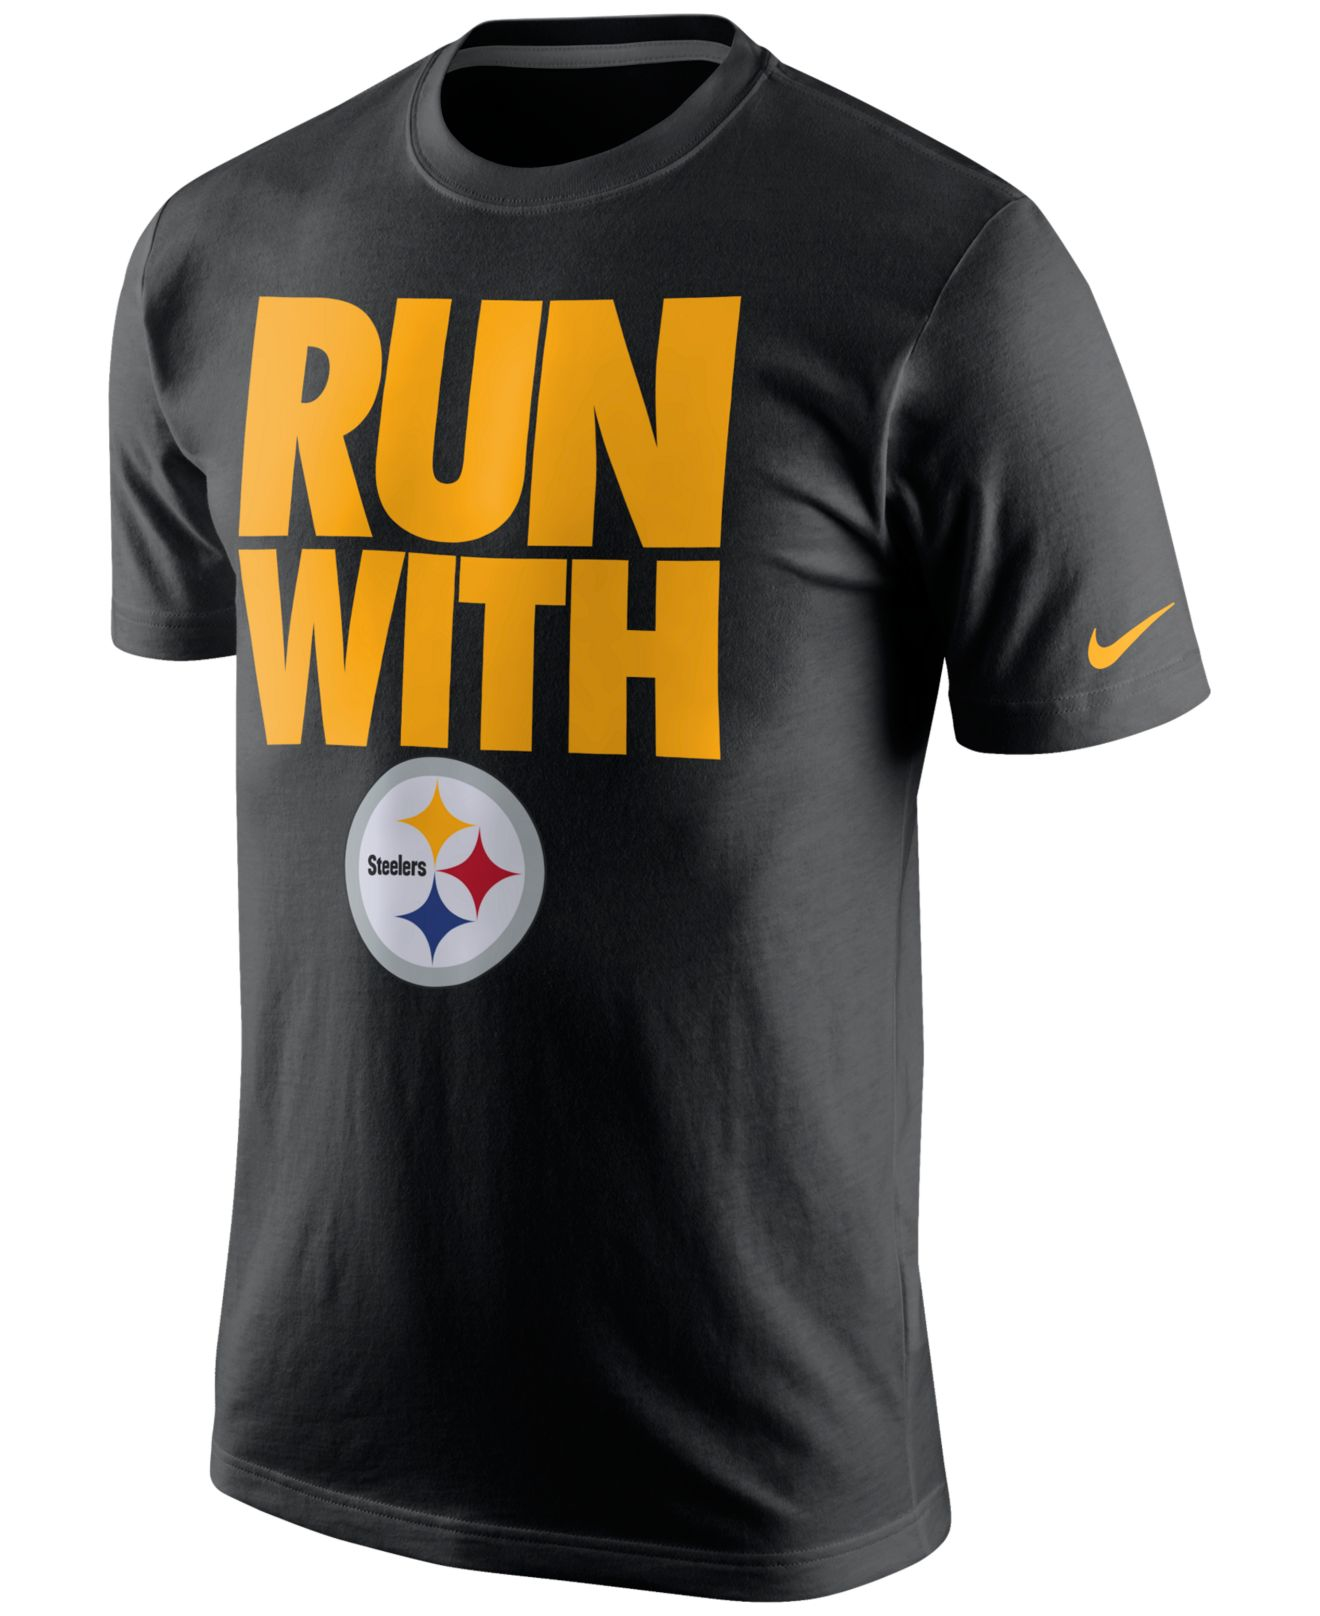 Lyst - Nike Men's Pittsburgh Steelers Team Spirit T-shirt in Black for Men